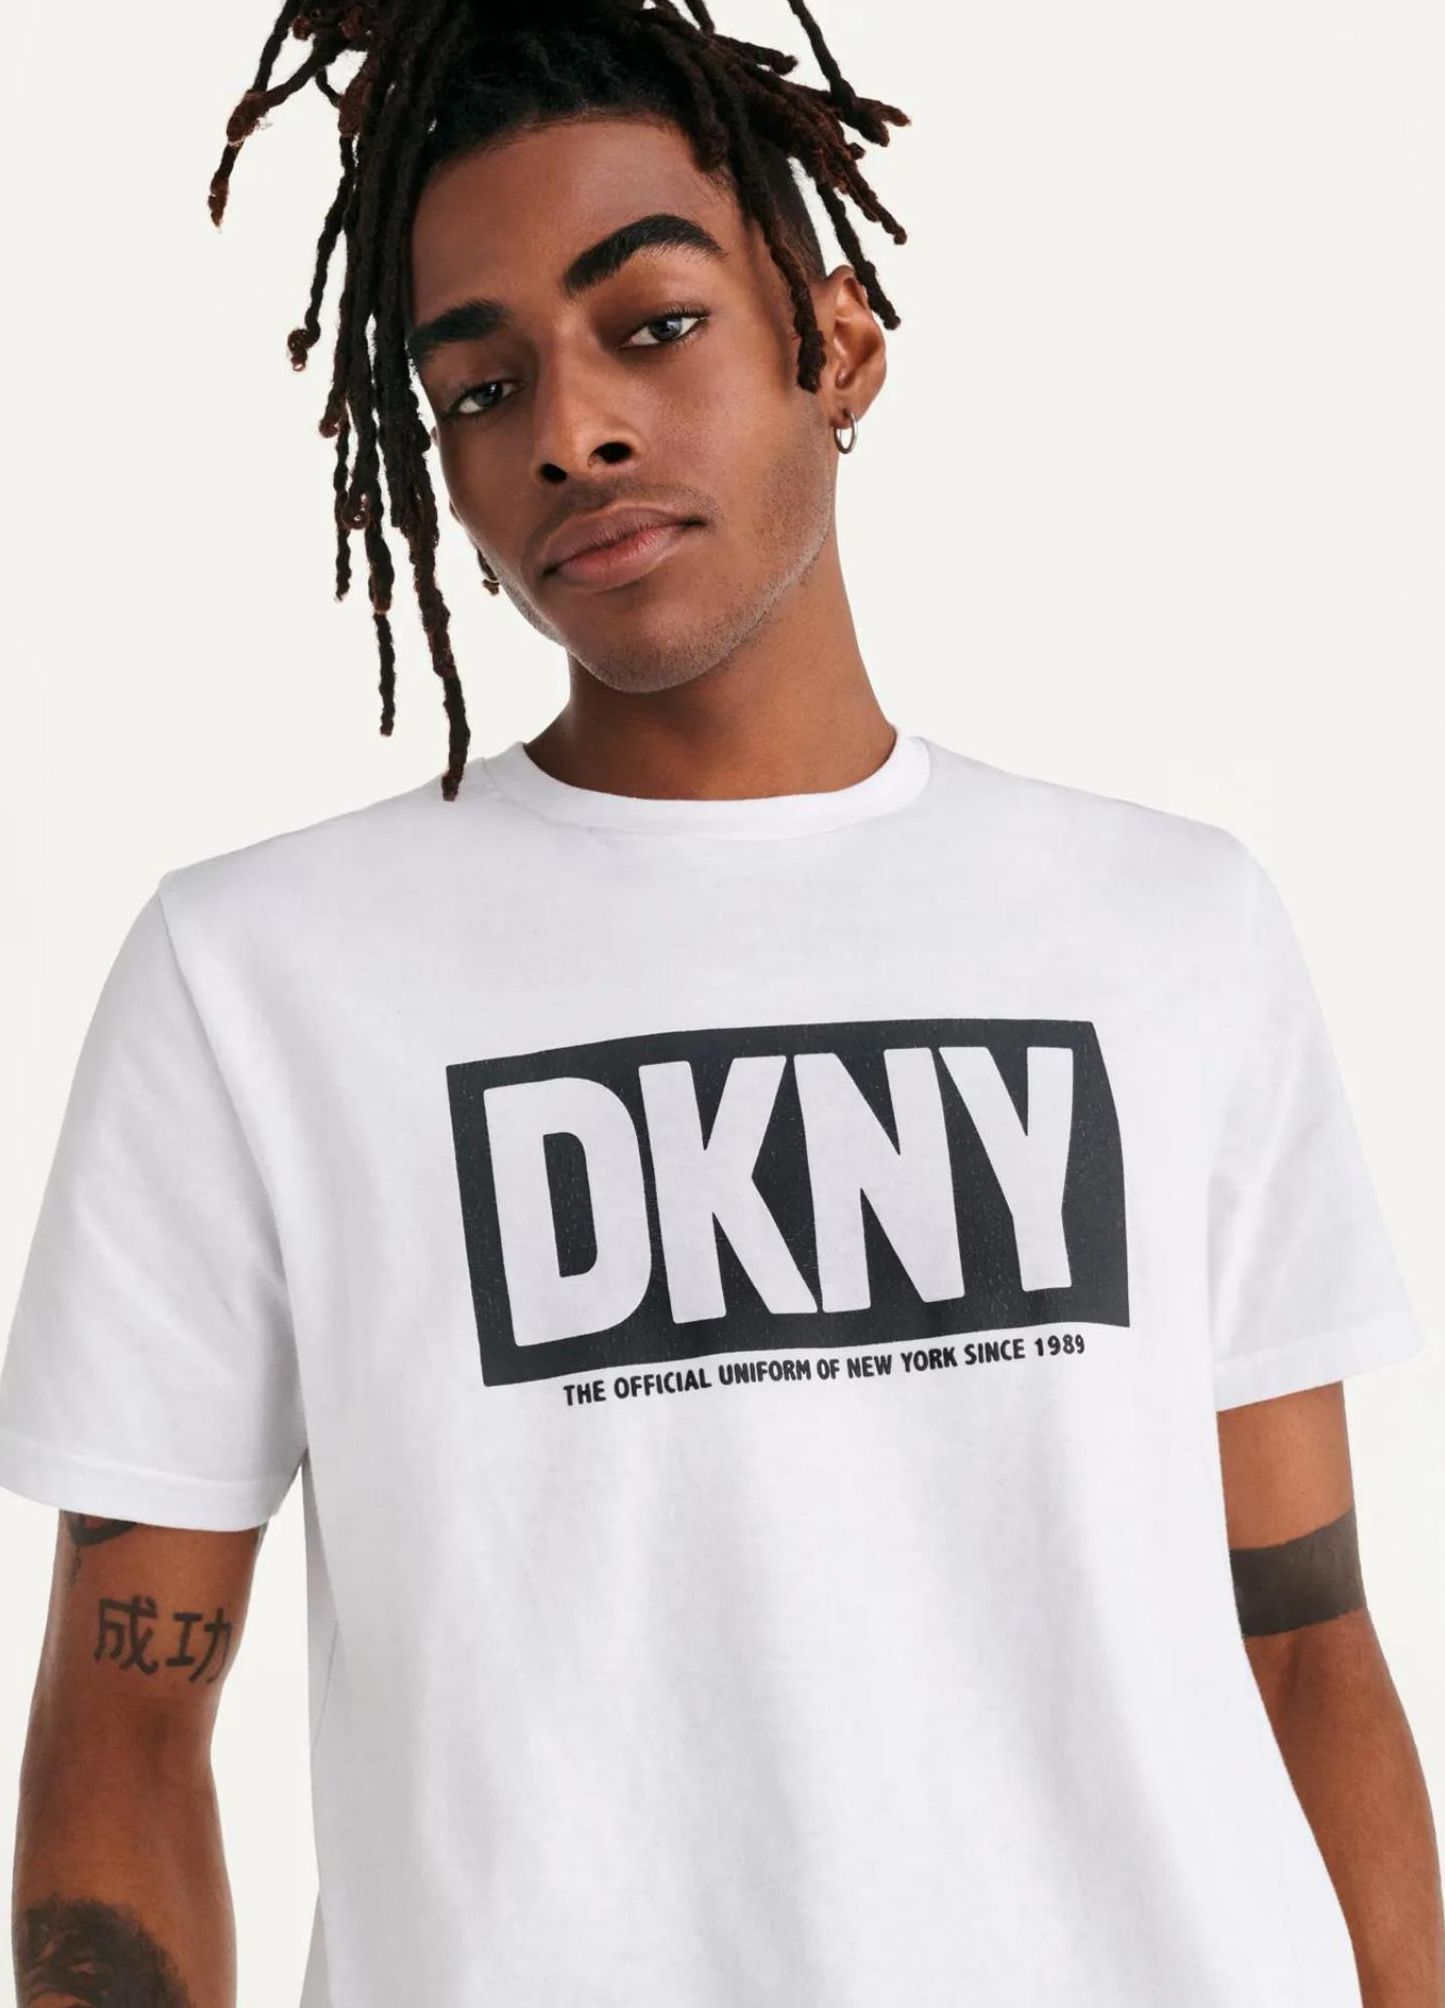 Season offers in DKNY